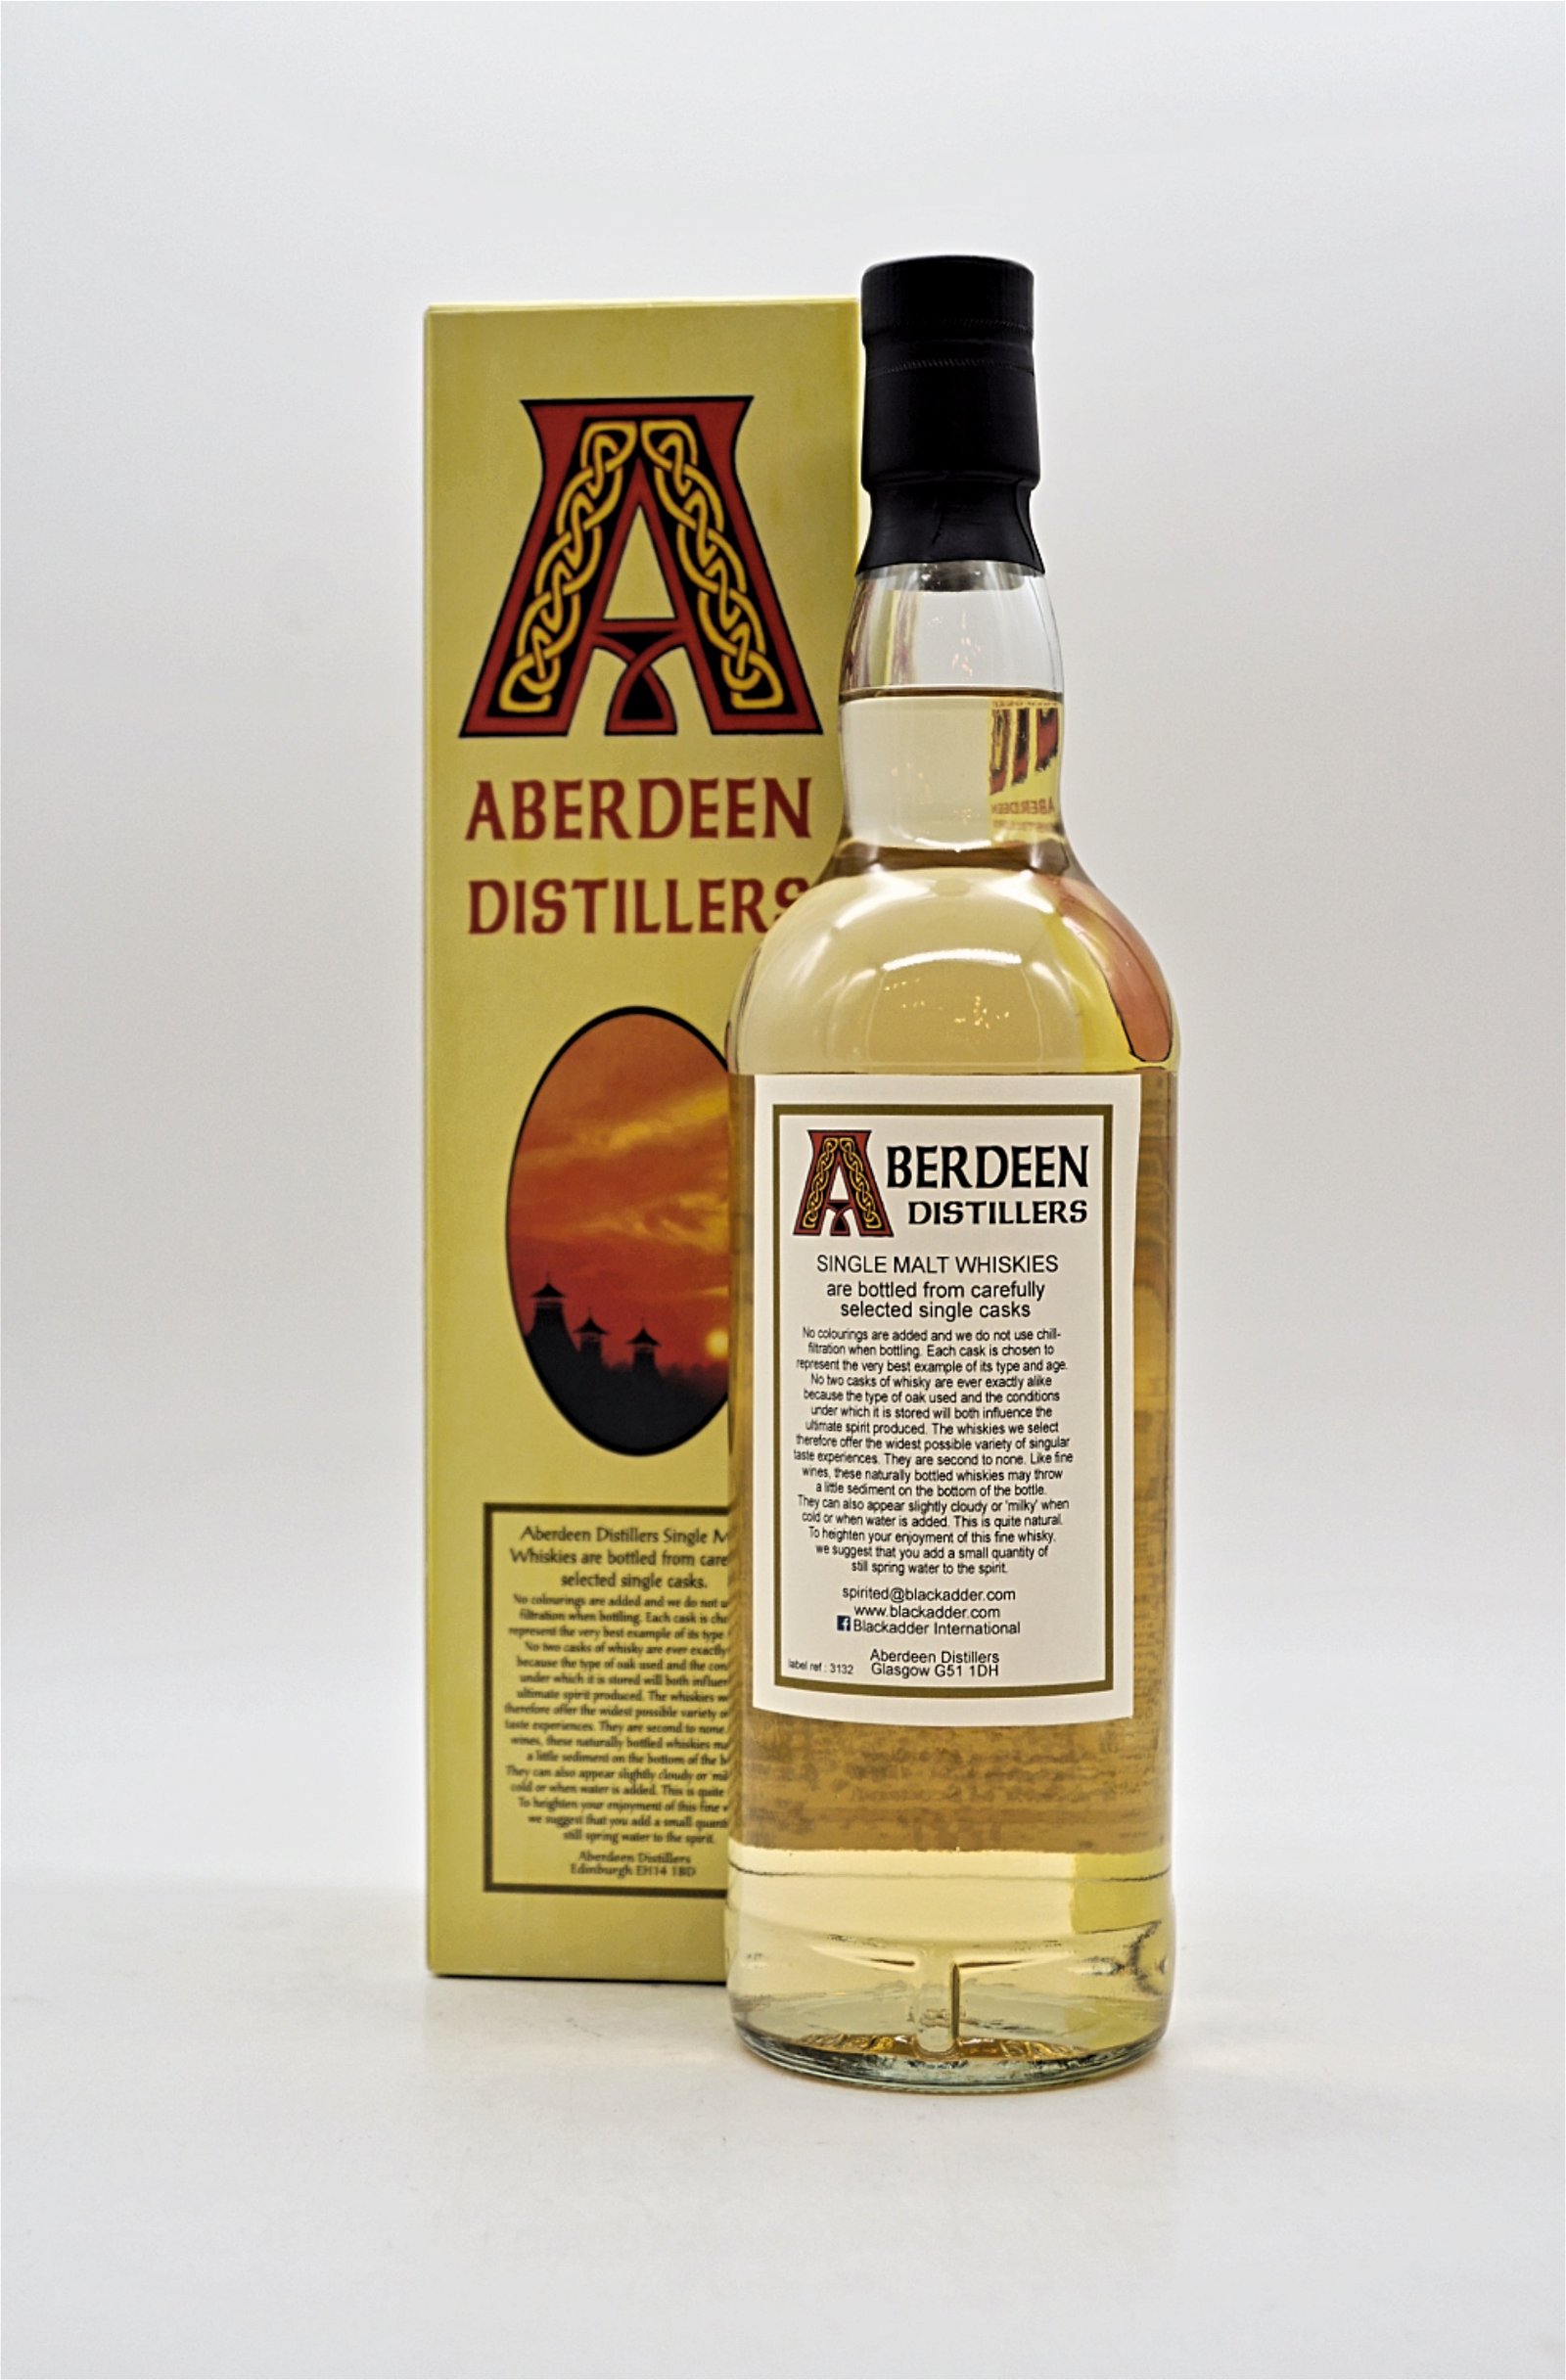 Aberdeen Distillers 10 Jahre Dufftown Cask Ref 100 Speyside Single Malt Scotch Whisky